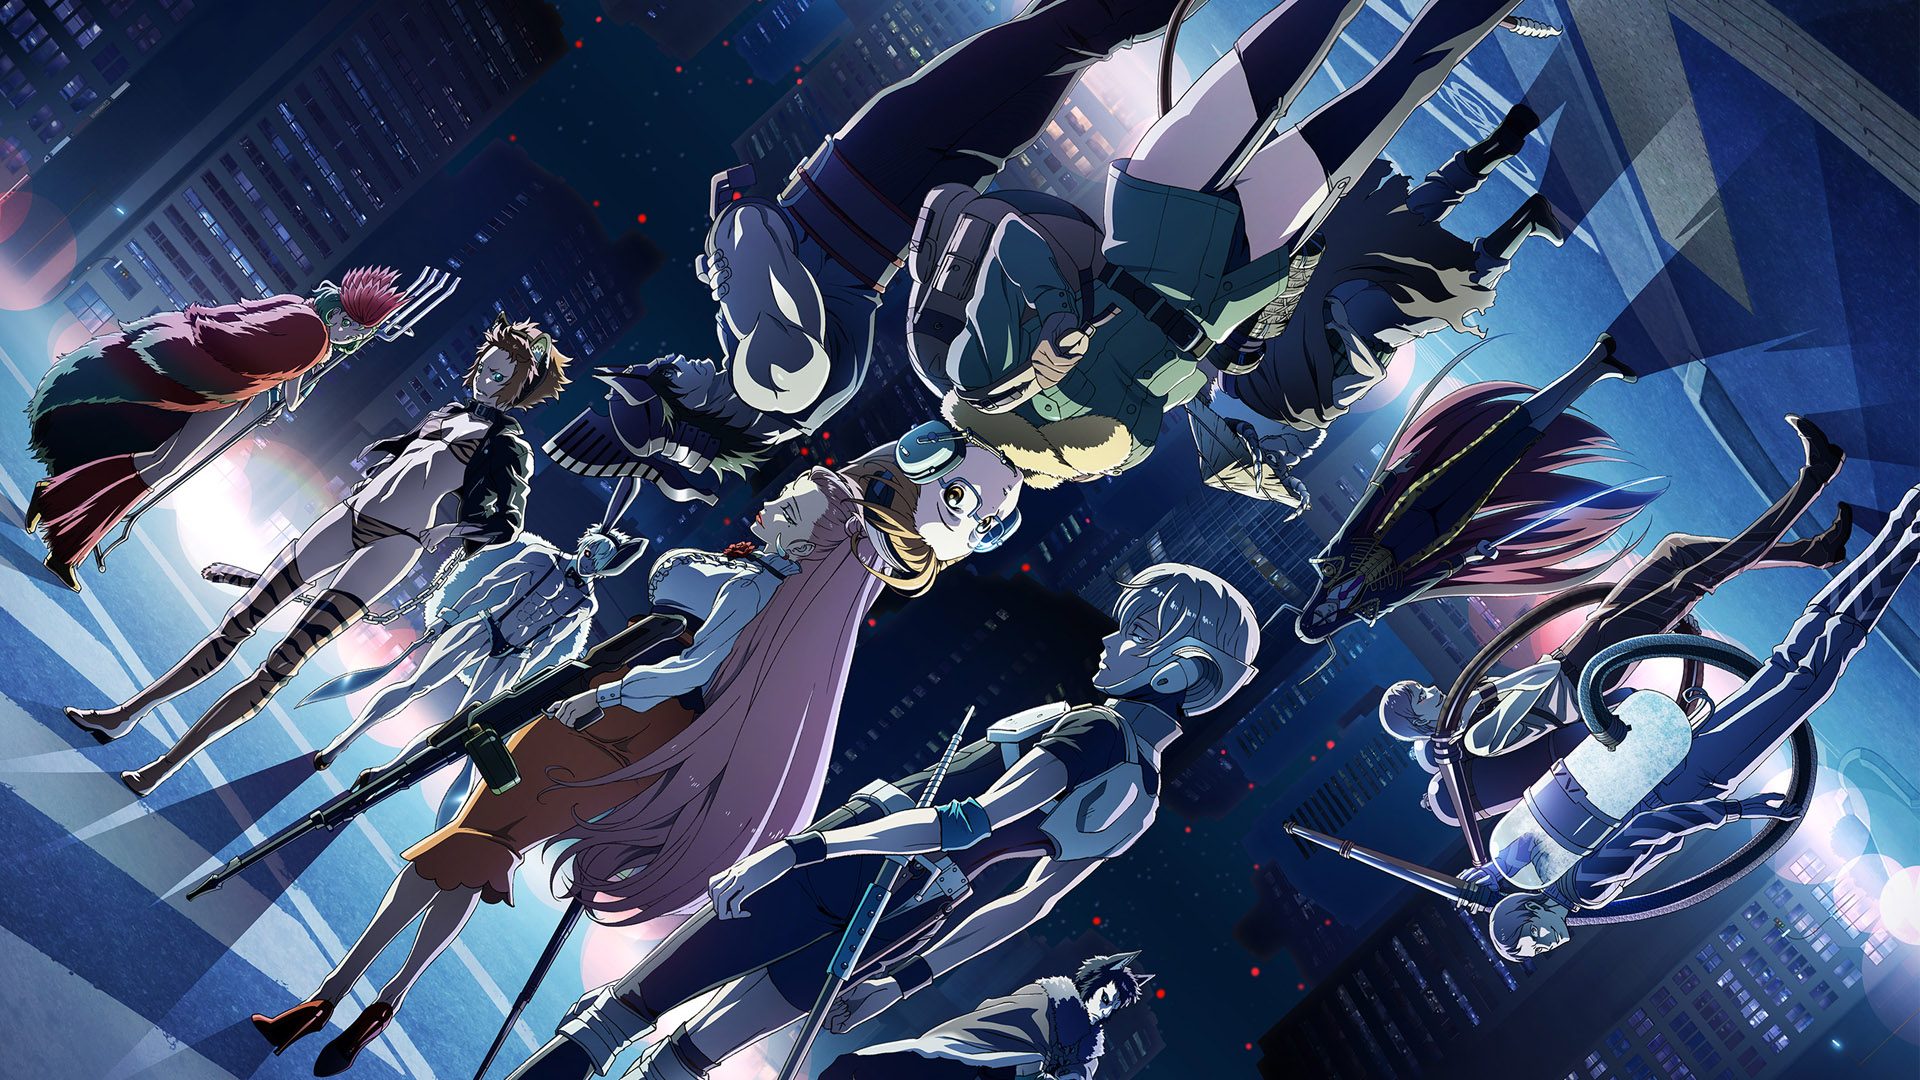 Juuni Taisen: Elenco do anime e visuais revelados » Anime Xis